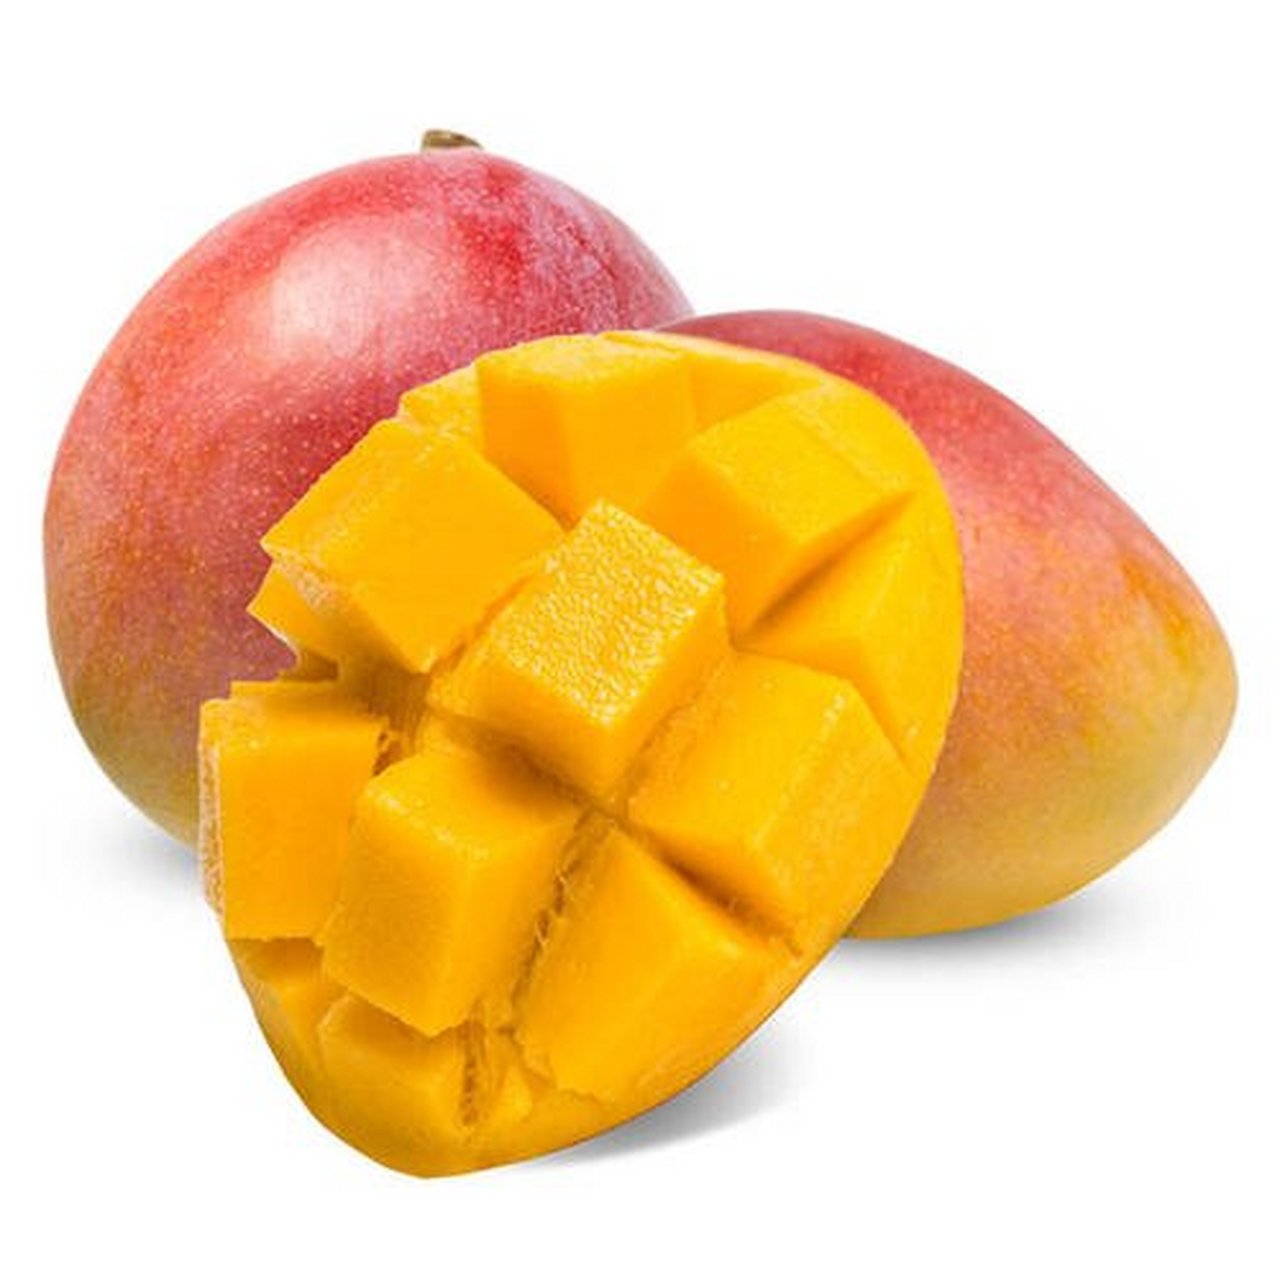 芒果,是人们日常生活中常见的一种南方水果儿.